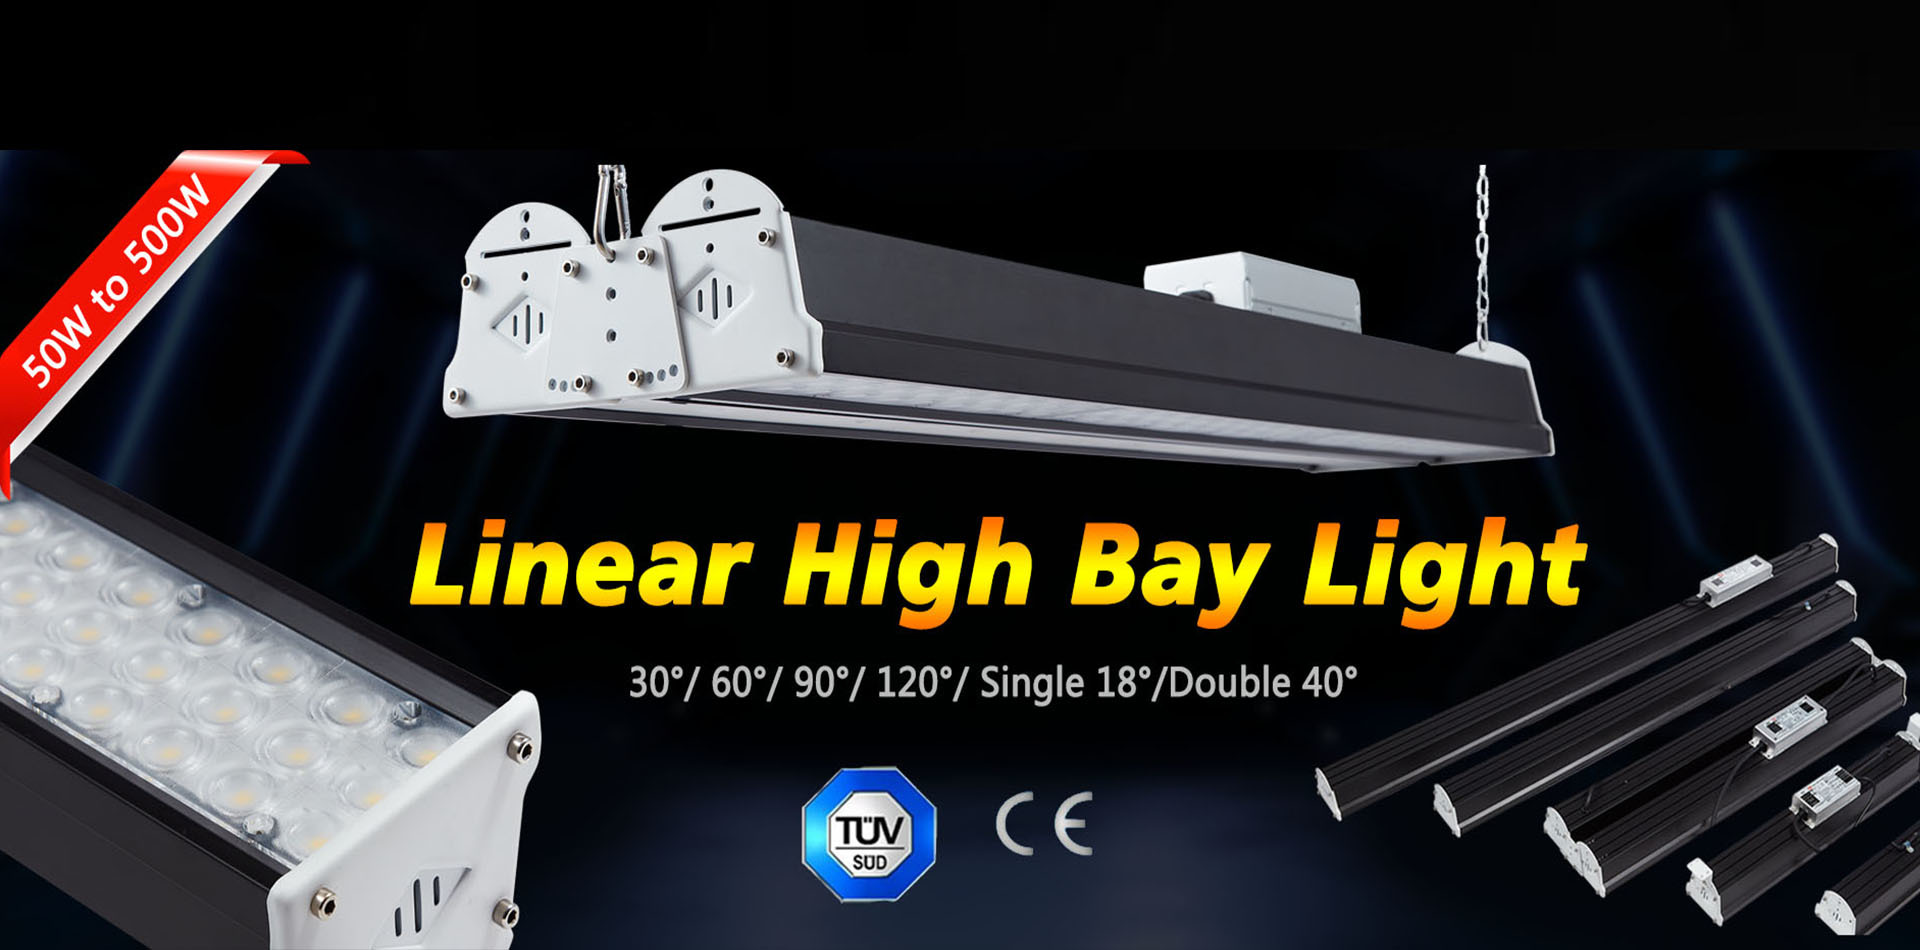 LED Linear high bay light